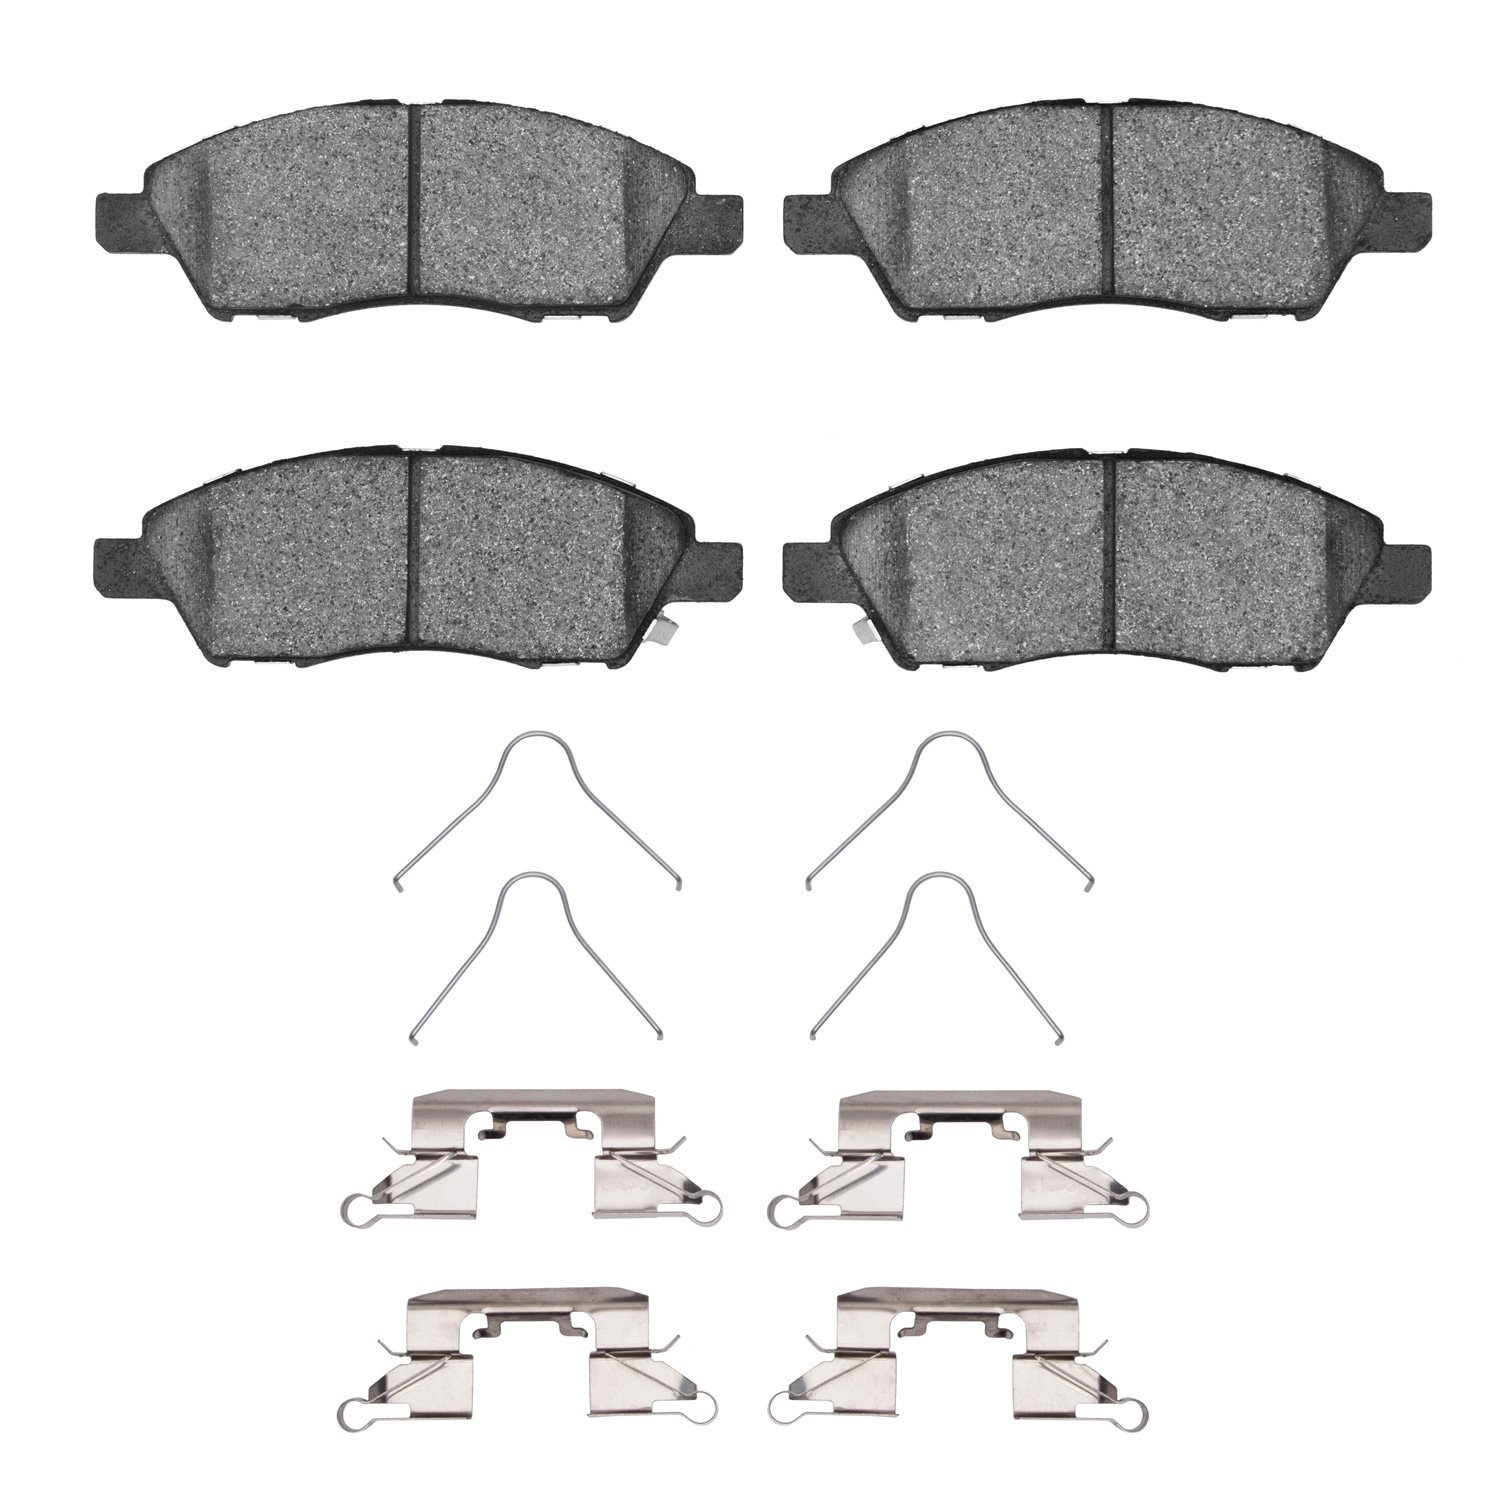 1311-1592-01 3000-Series Semi-Metallic Brake Pads & Hardware Kit, 2011-2019 Infiniti/Nissan, Position: Front